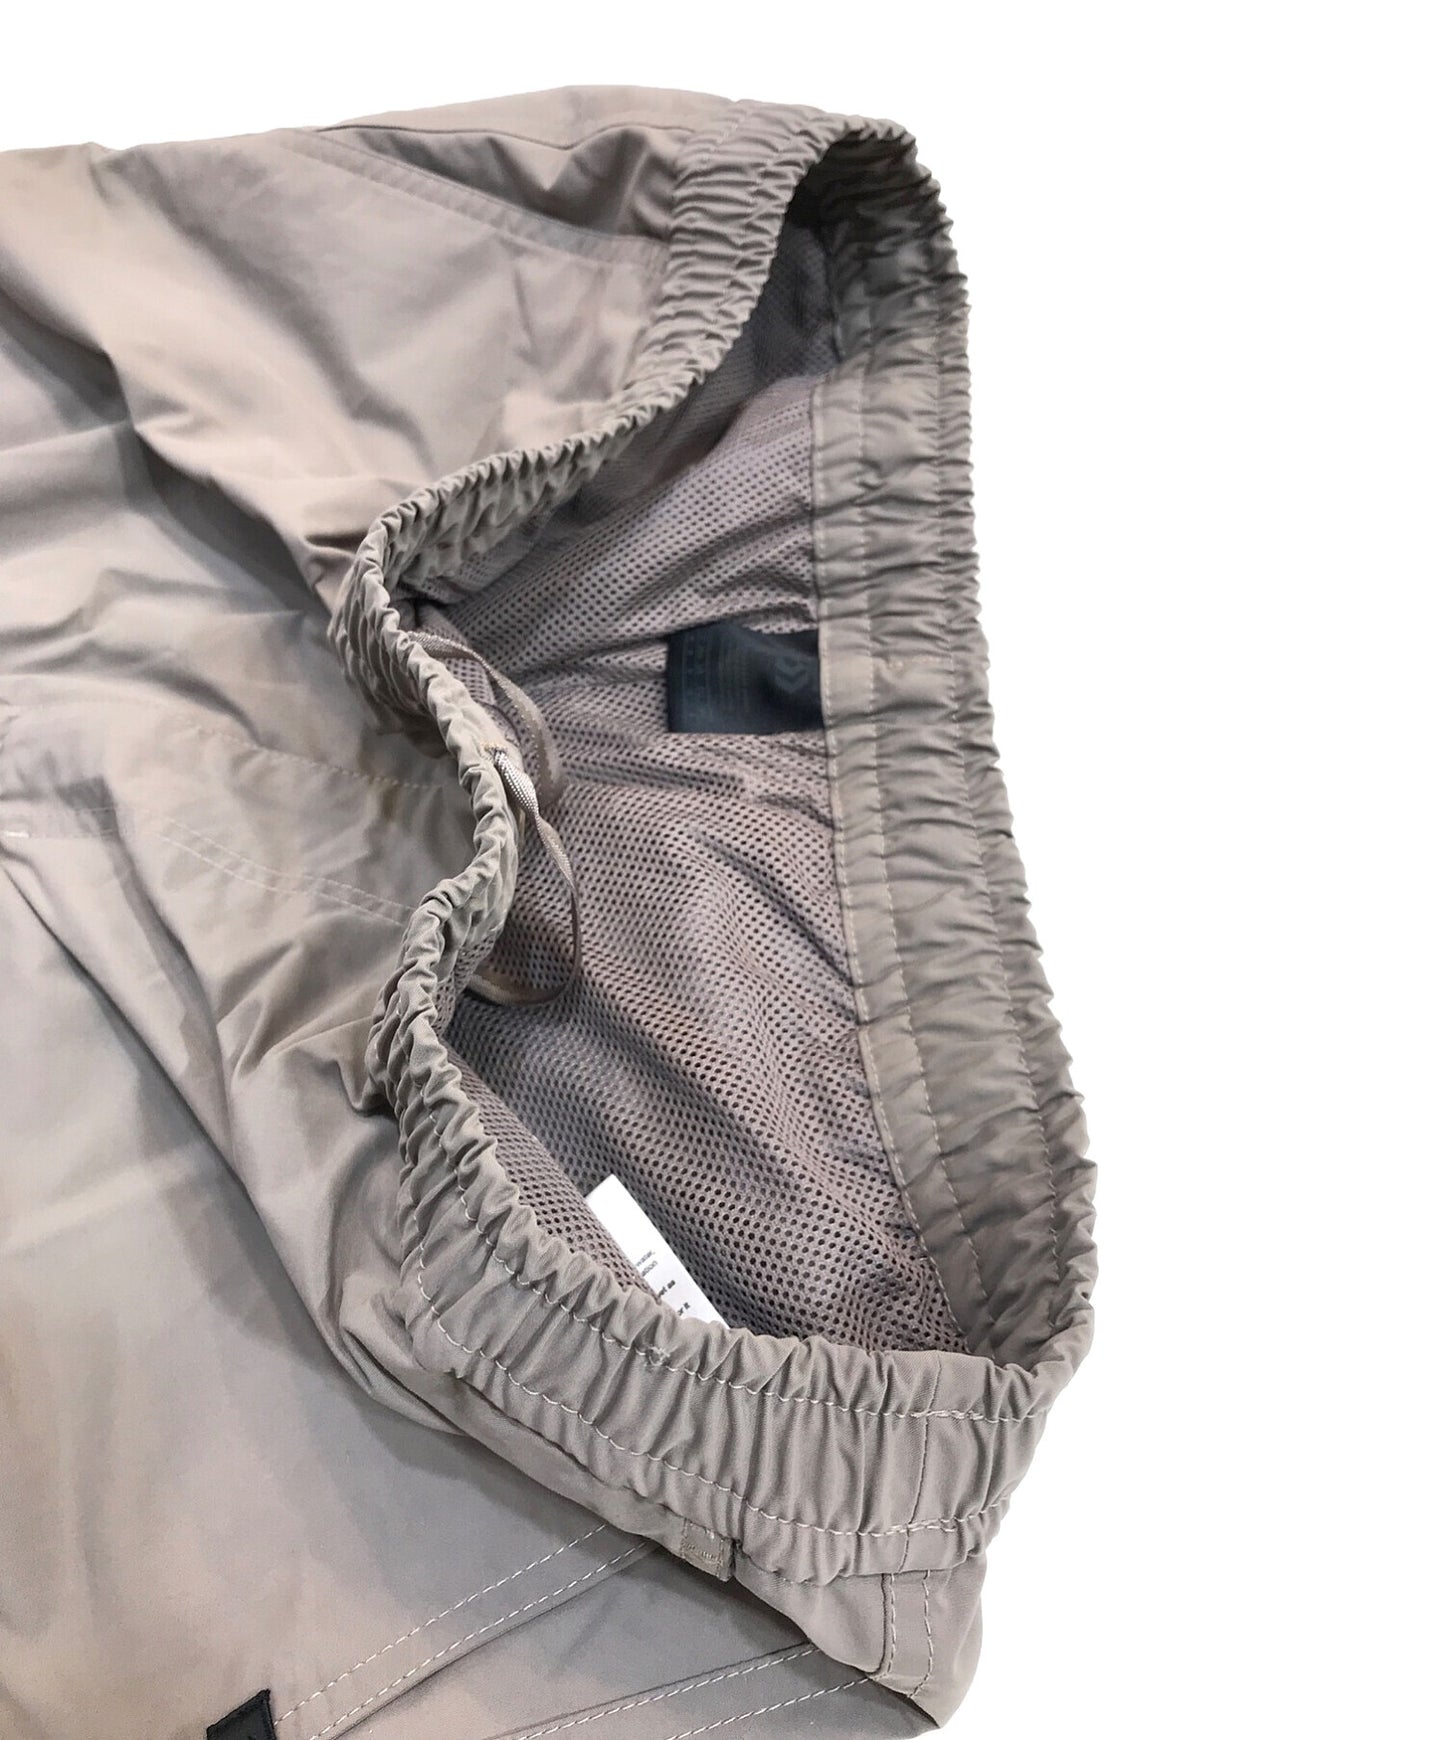 [Pre-owned] DAIWA PIER39 Tech Easy Trouser Pants BP-33022W